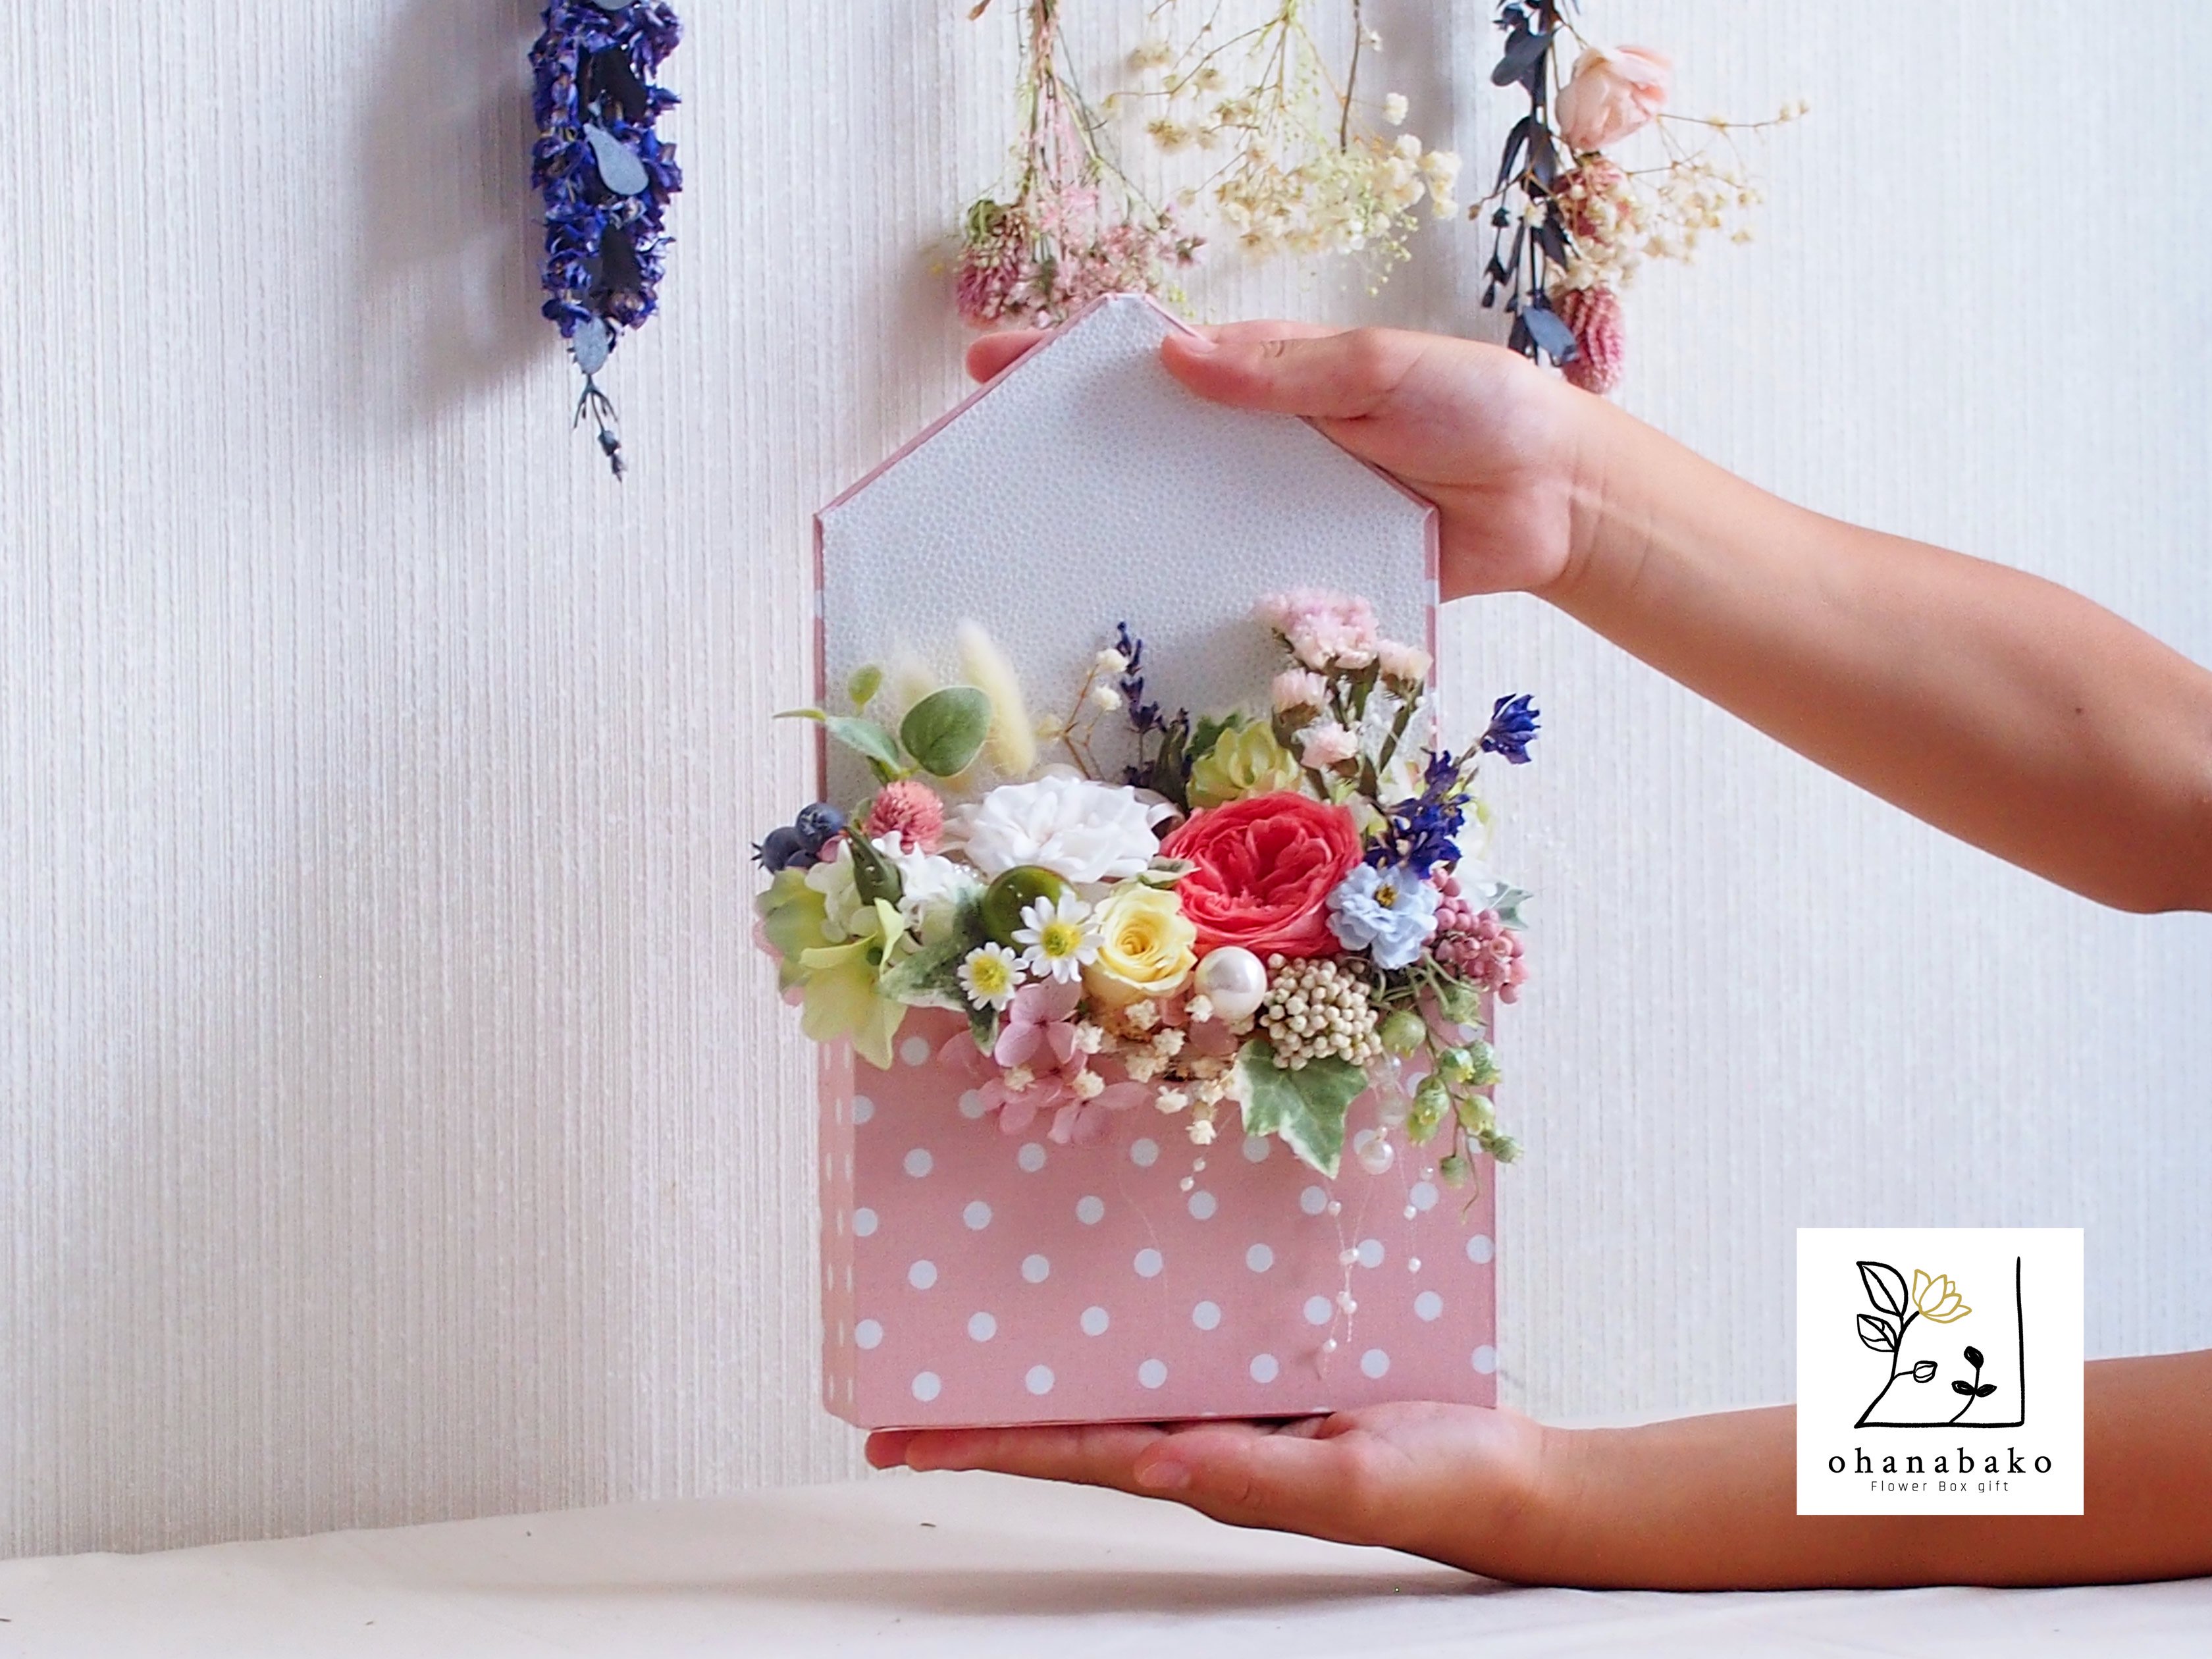 お誕生日 結婚祝い 送別のお花 お花のレターボックス プリザーブドフラワーとドライフラワーをいっぱい詰めたお手紙をお届けします